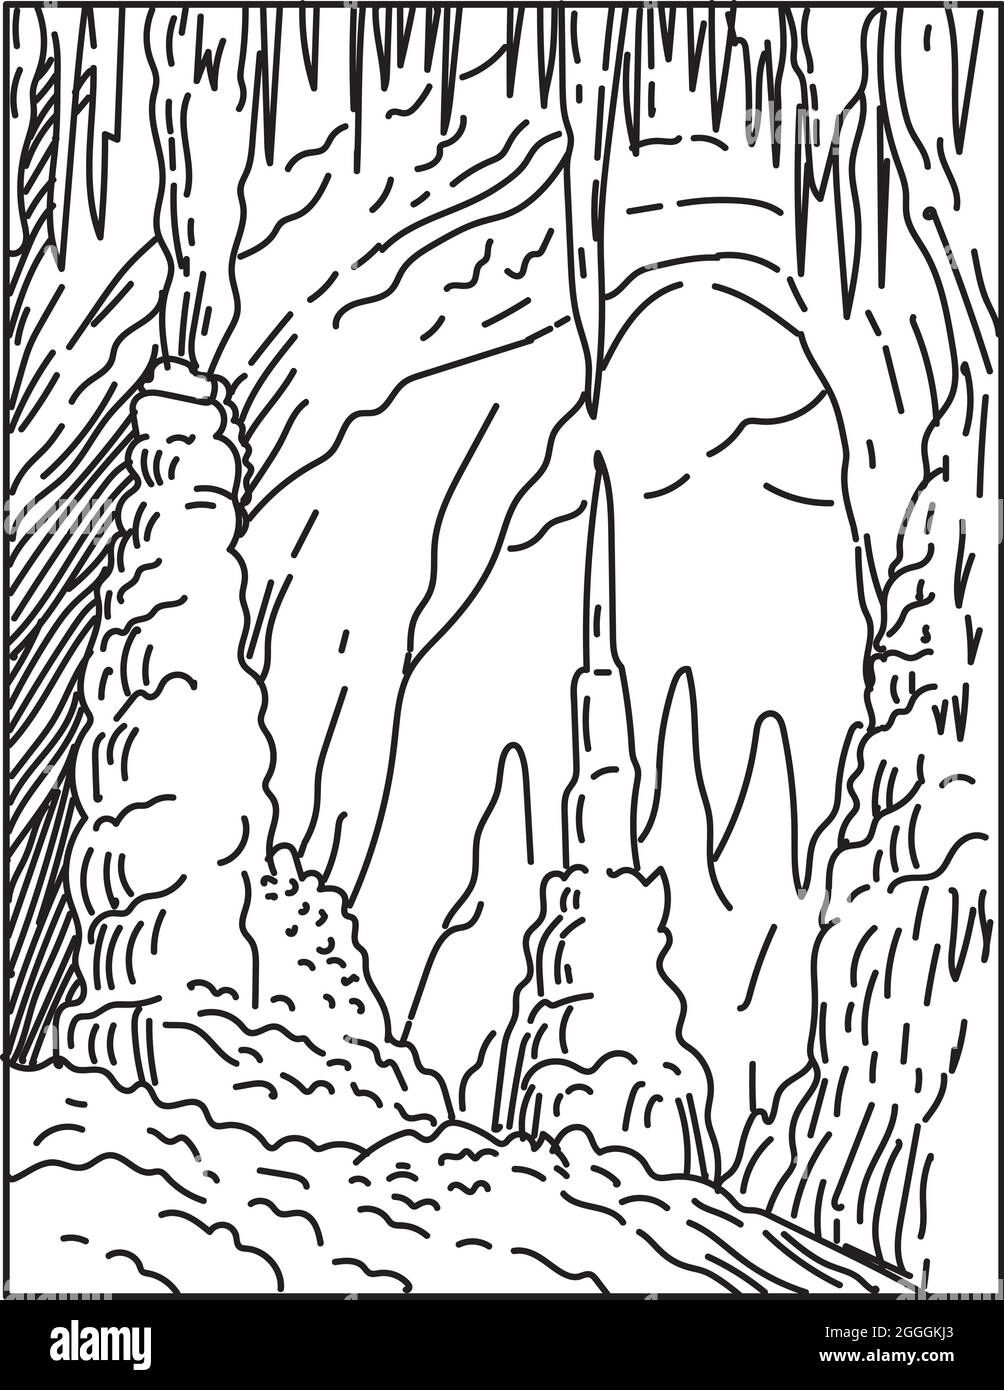 Illustration monoligne du parc national des grottes de Carlsbad dans le désert de Chihuahuan du sud du Nouveau-Mexique, États-Unis fait en monolin rétro noir et blanc Illustration de Vecteur